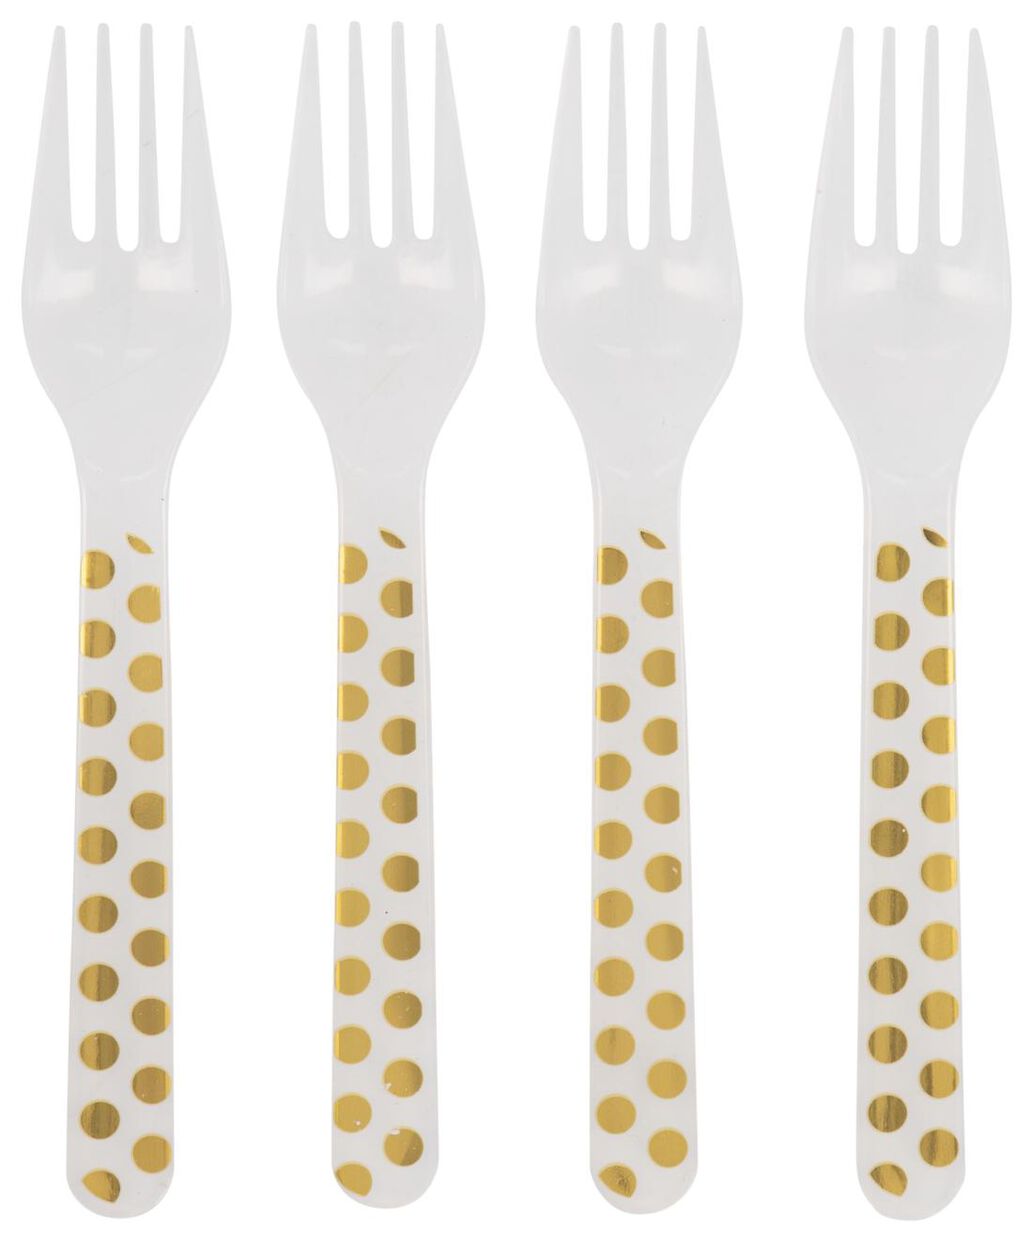 Inactief Middelen behalve voor plastic vorken herbruikbaar - gouden stippen - 4 stuks - HEMA